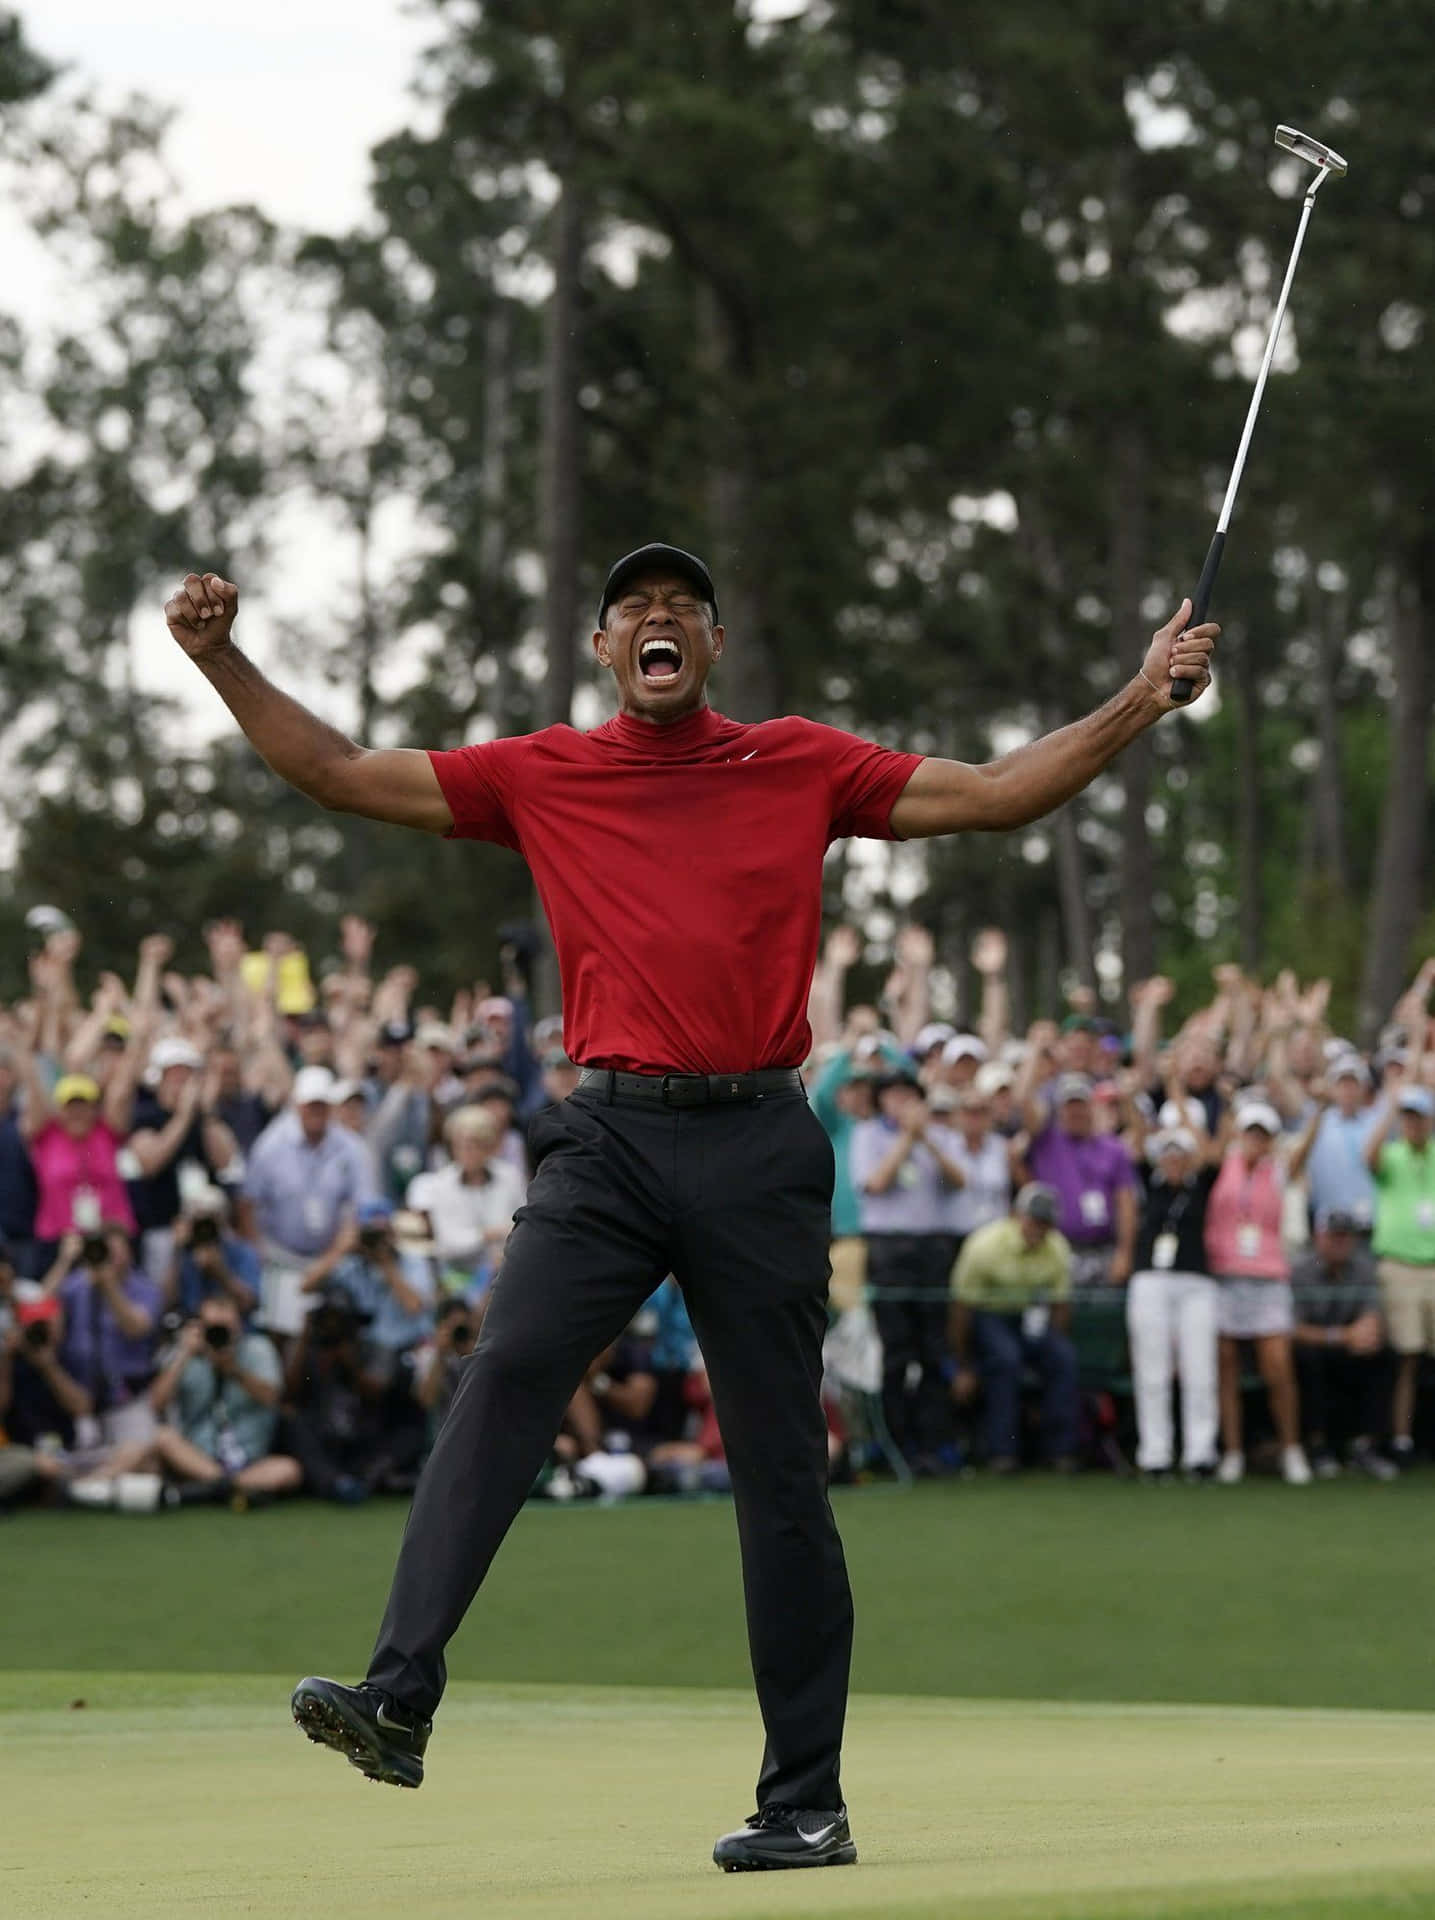 Ladensie Dieses Hochwertige Hintergrundbild Von Tiger Woods Und Seinem Iphone Herunter. Wallpaper